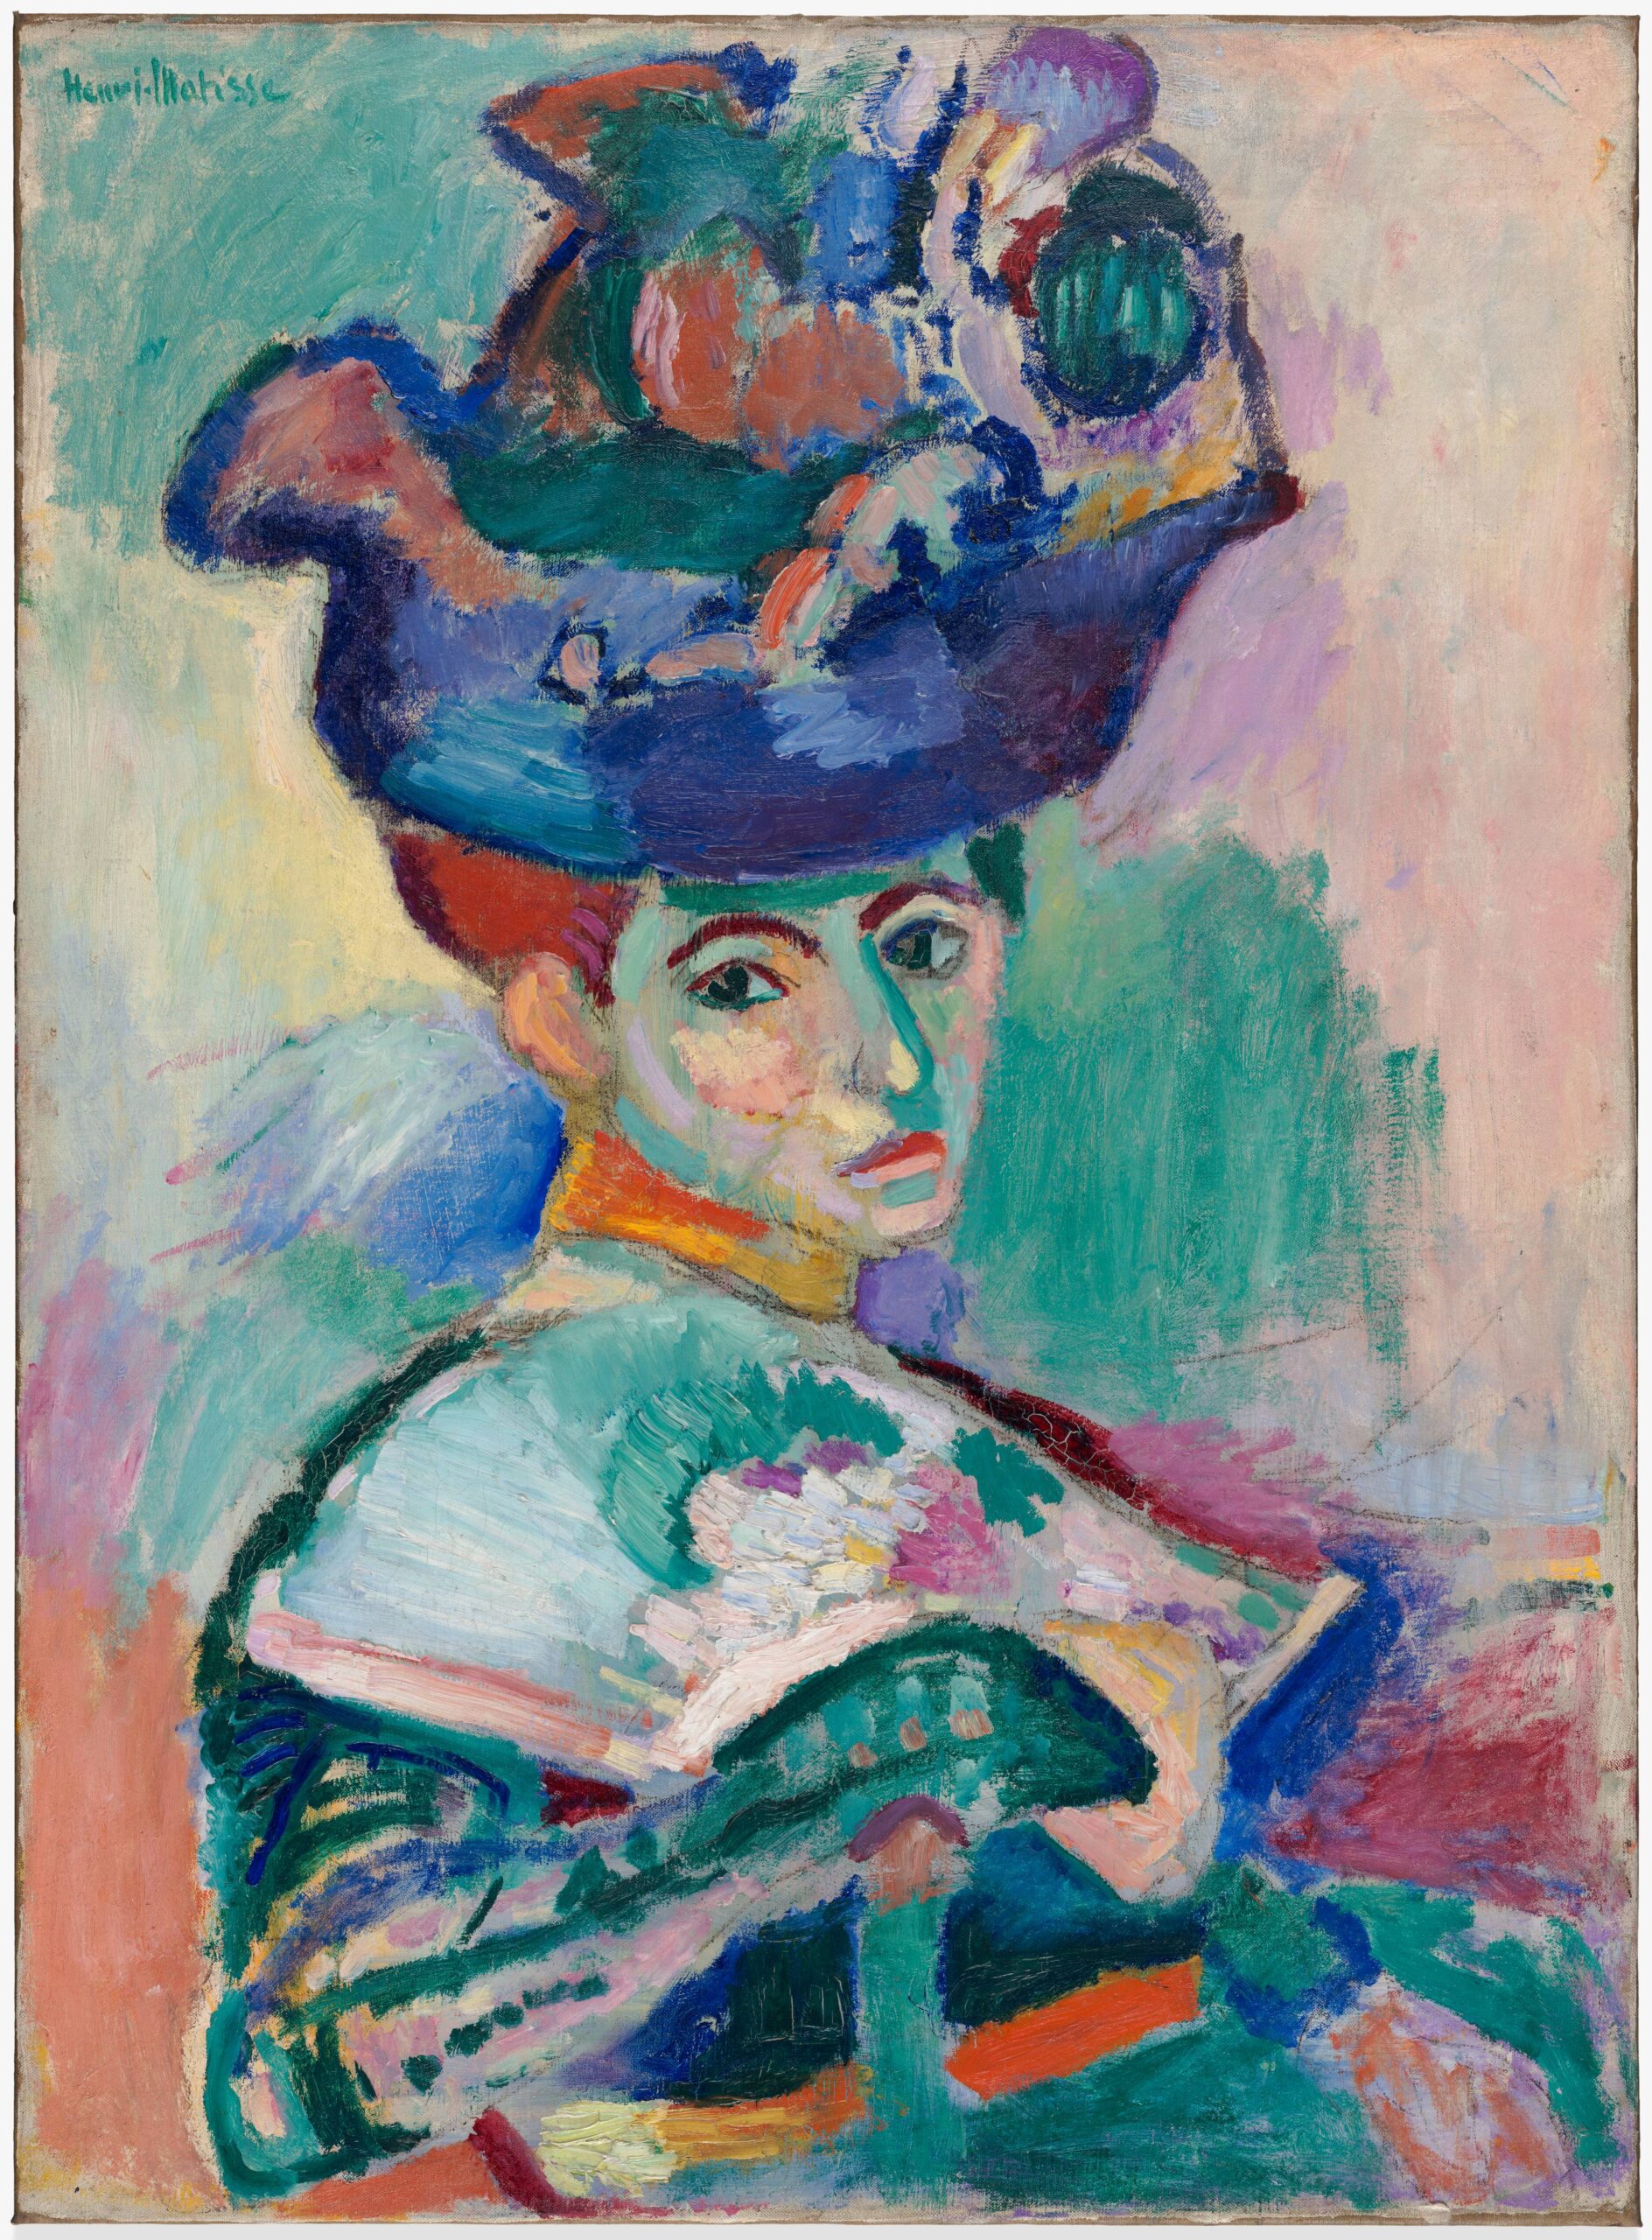 Femme au chapeau (Woman with a Hat), 1905 - Henri Matisse